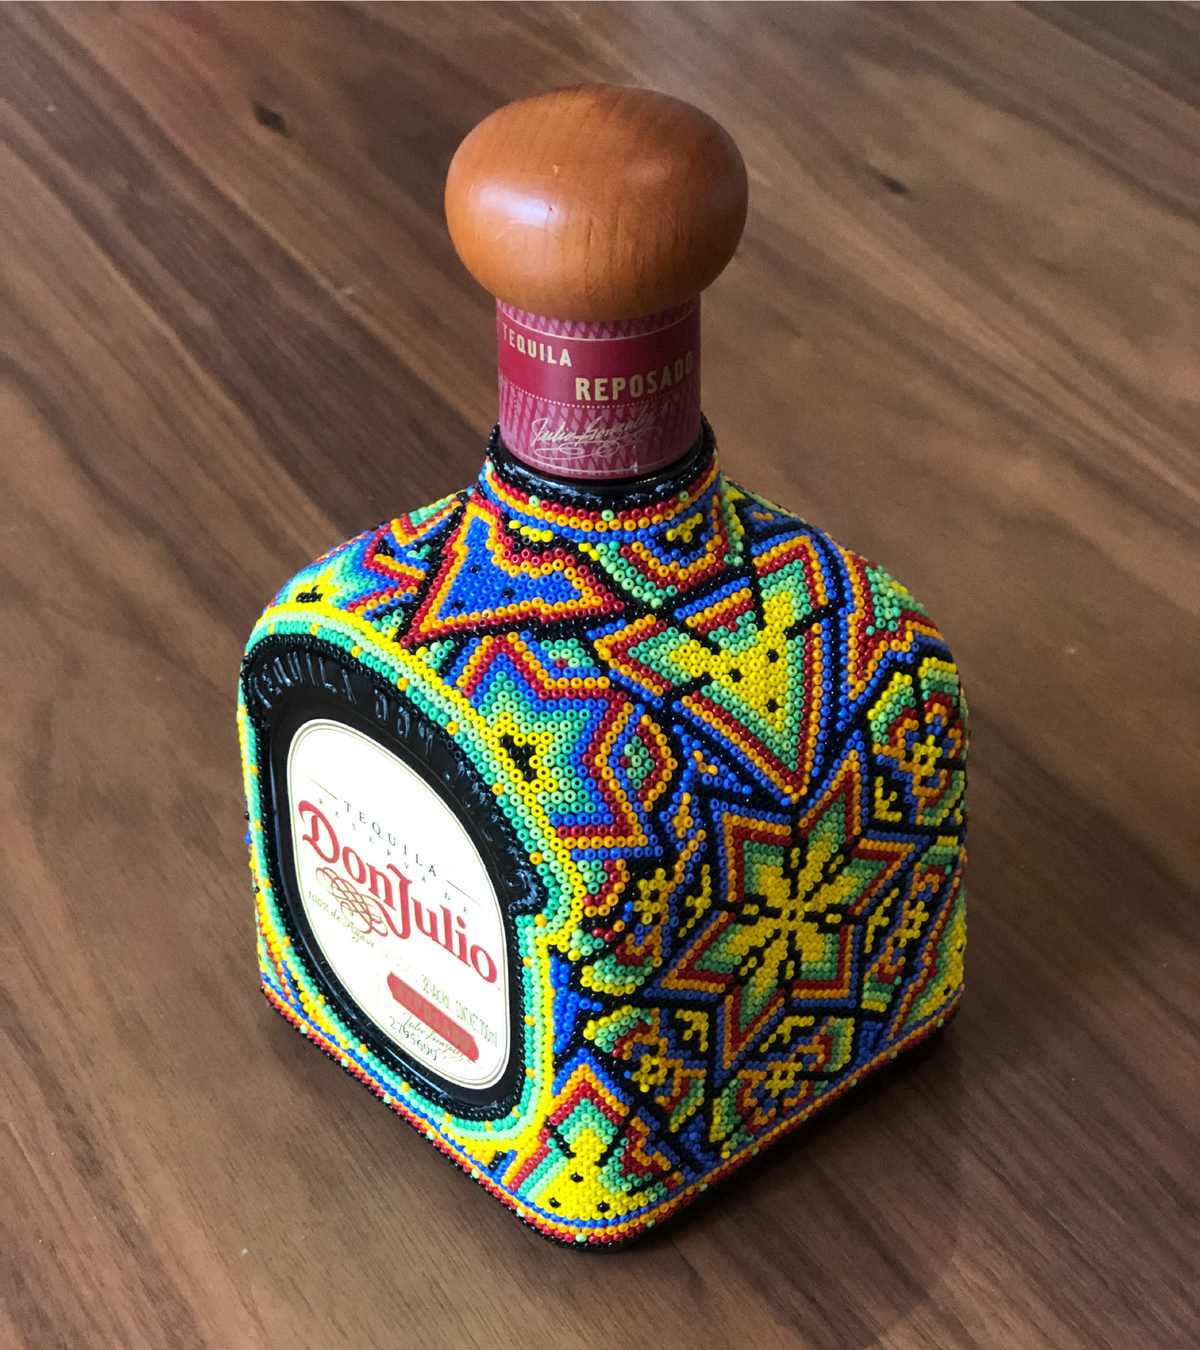 Botella Don Julio Reposado con arte huichol